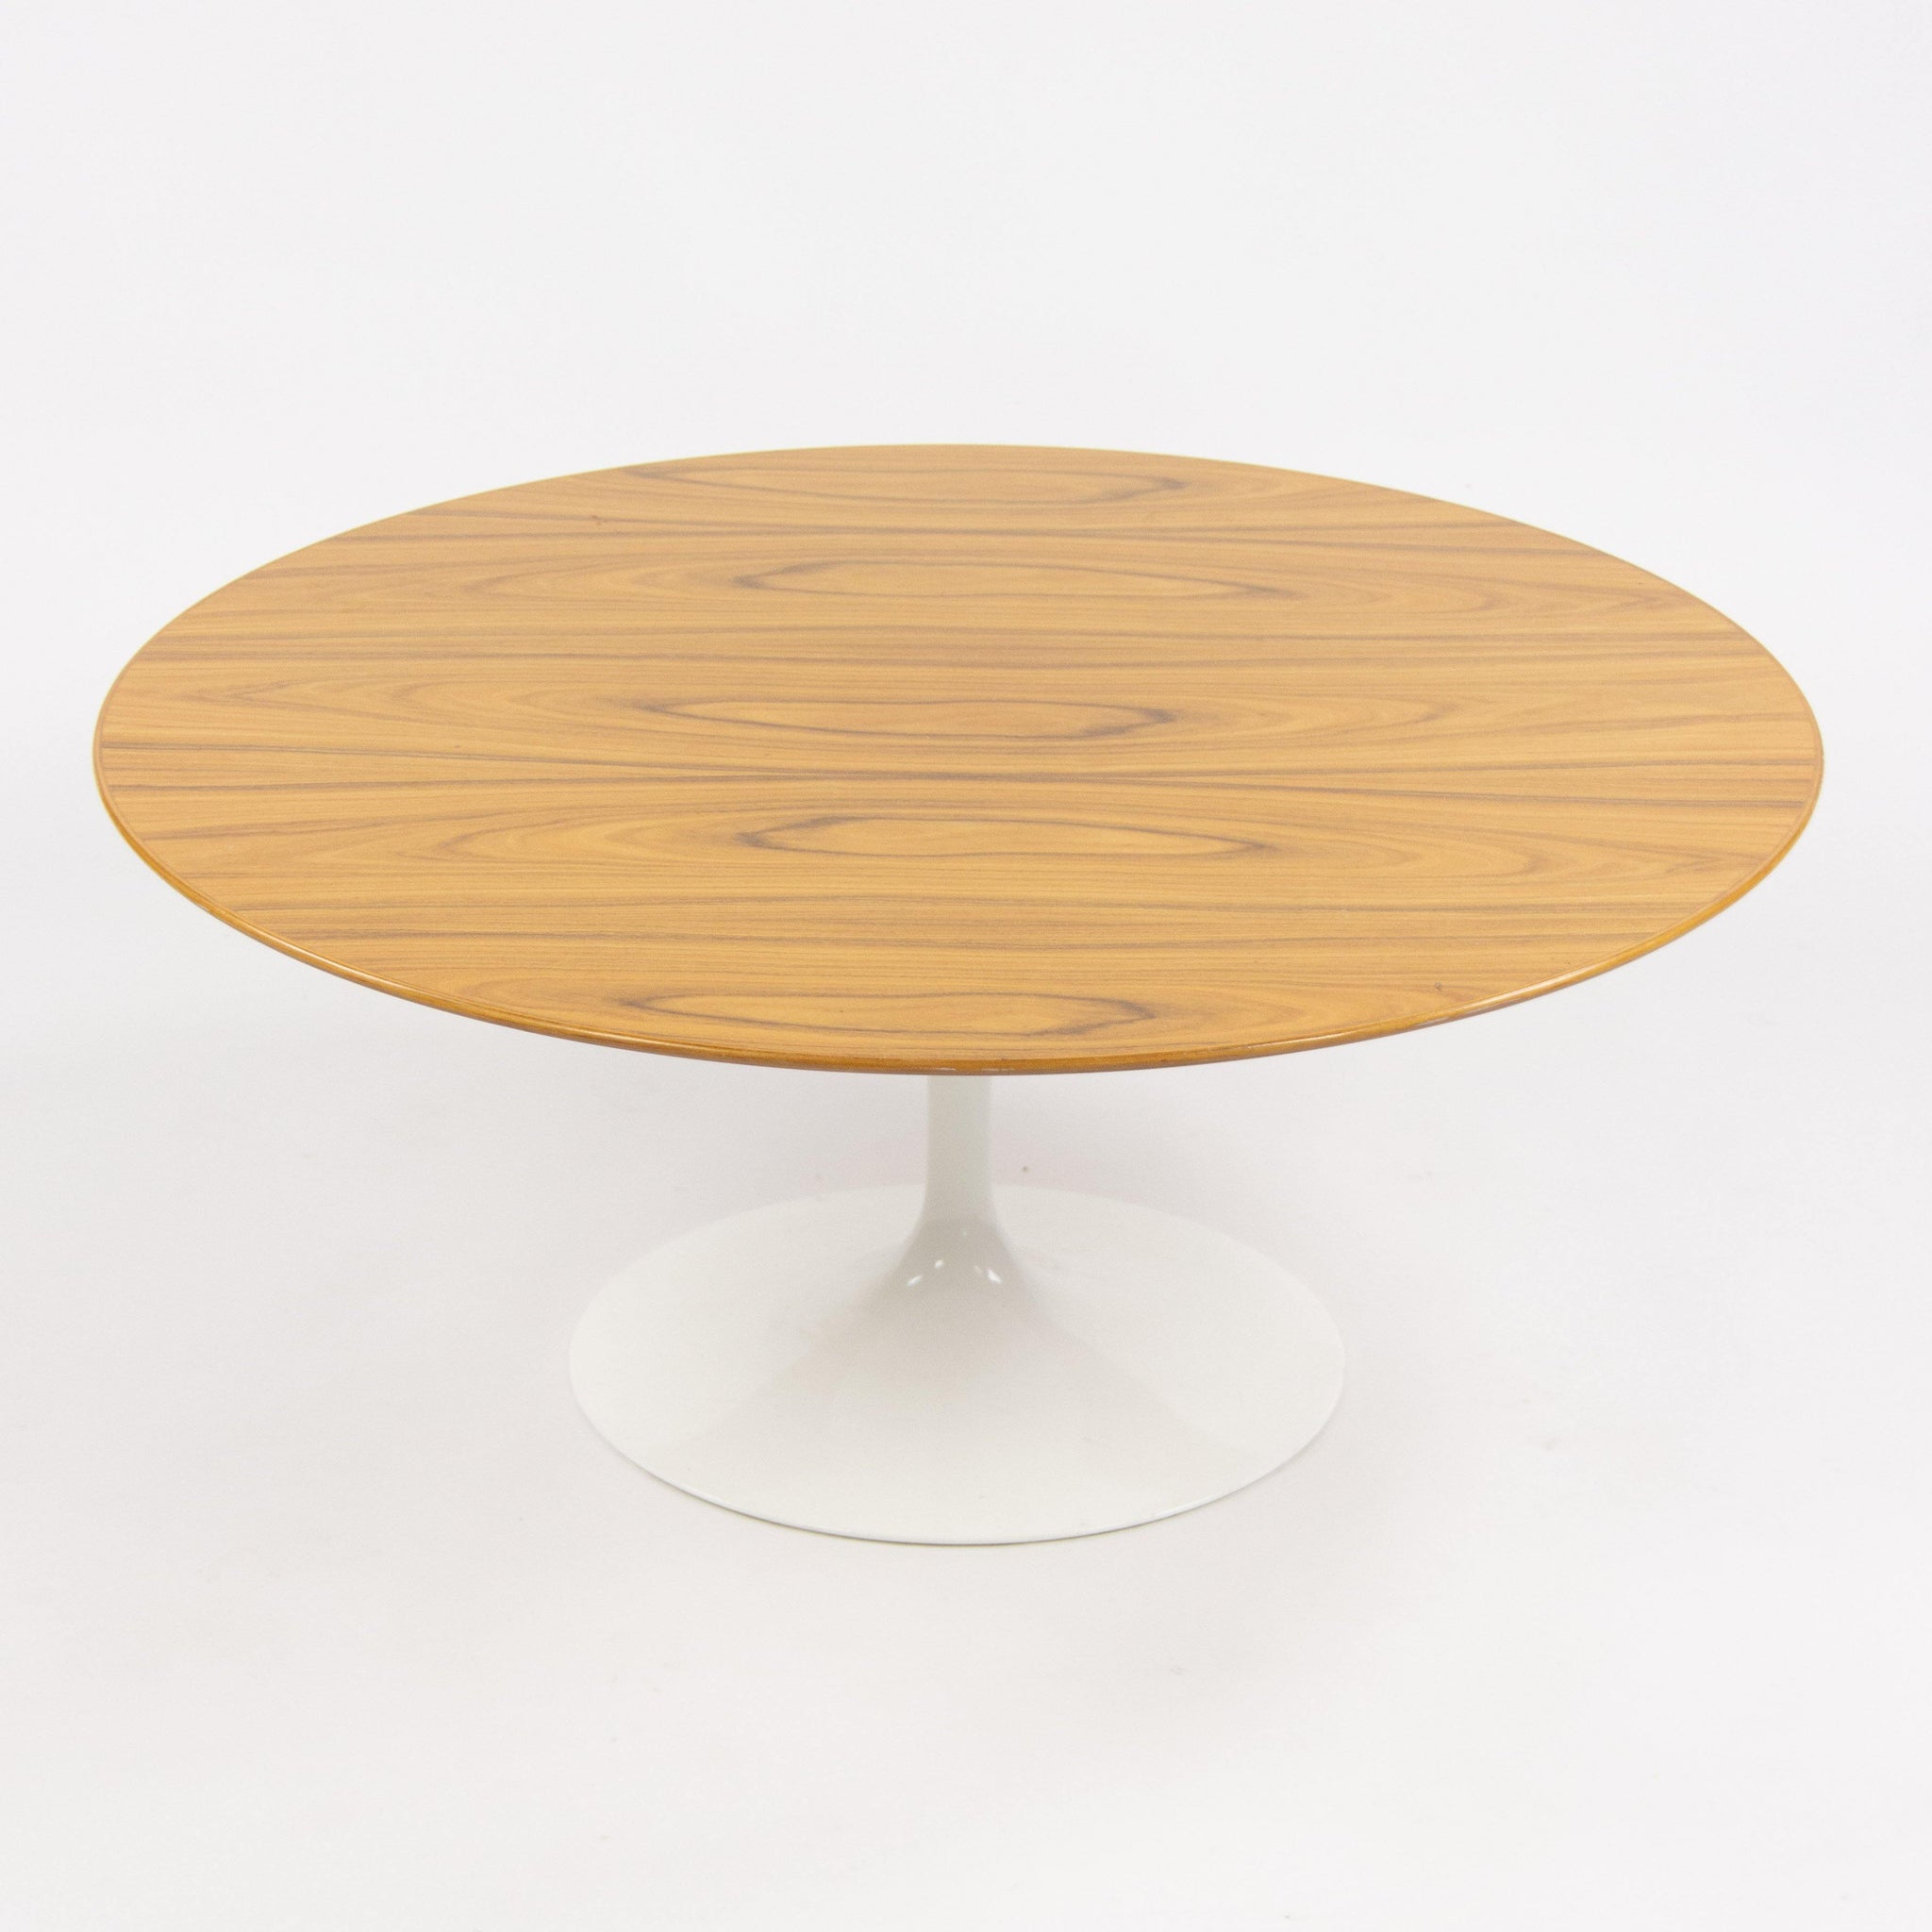 Eero Saarinen For Knoll International 35 Inch Tulip Coffee Table Rosewood 2009 - Rarify Inc.